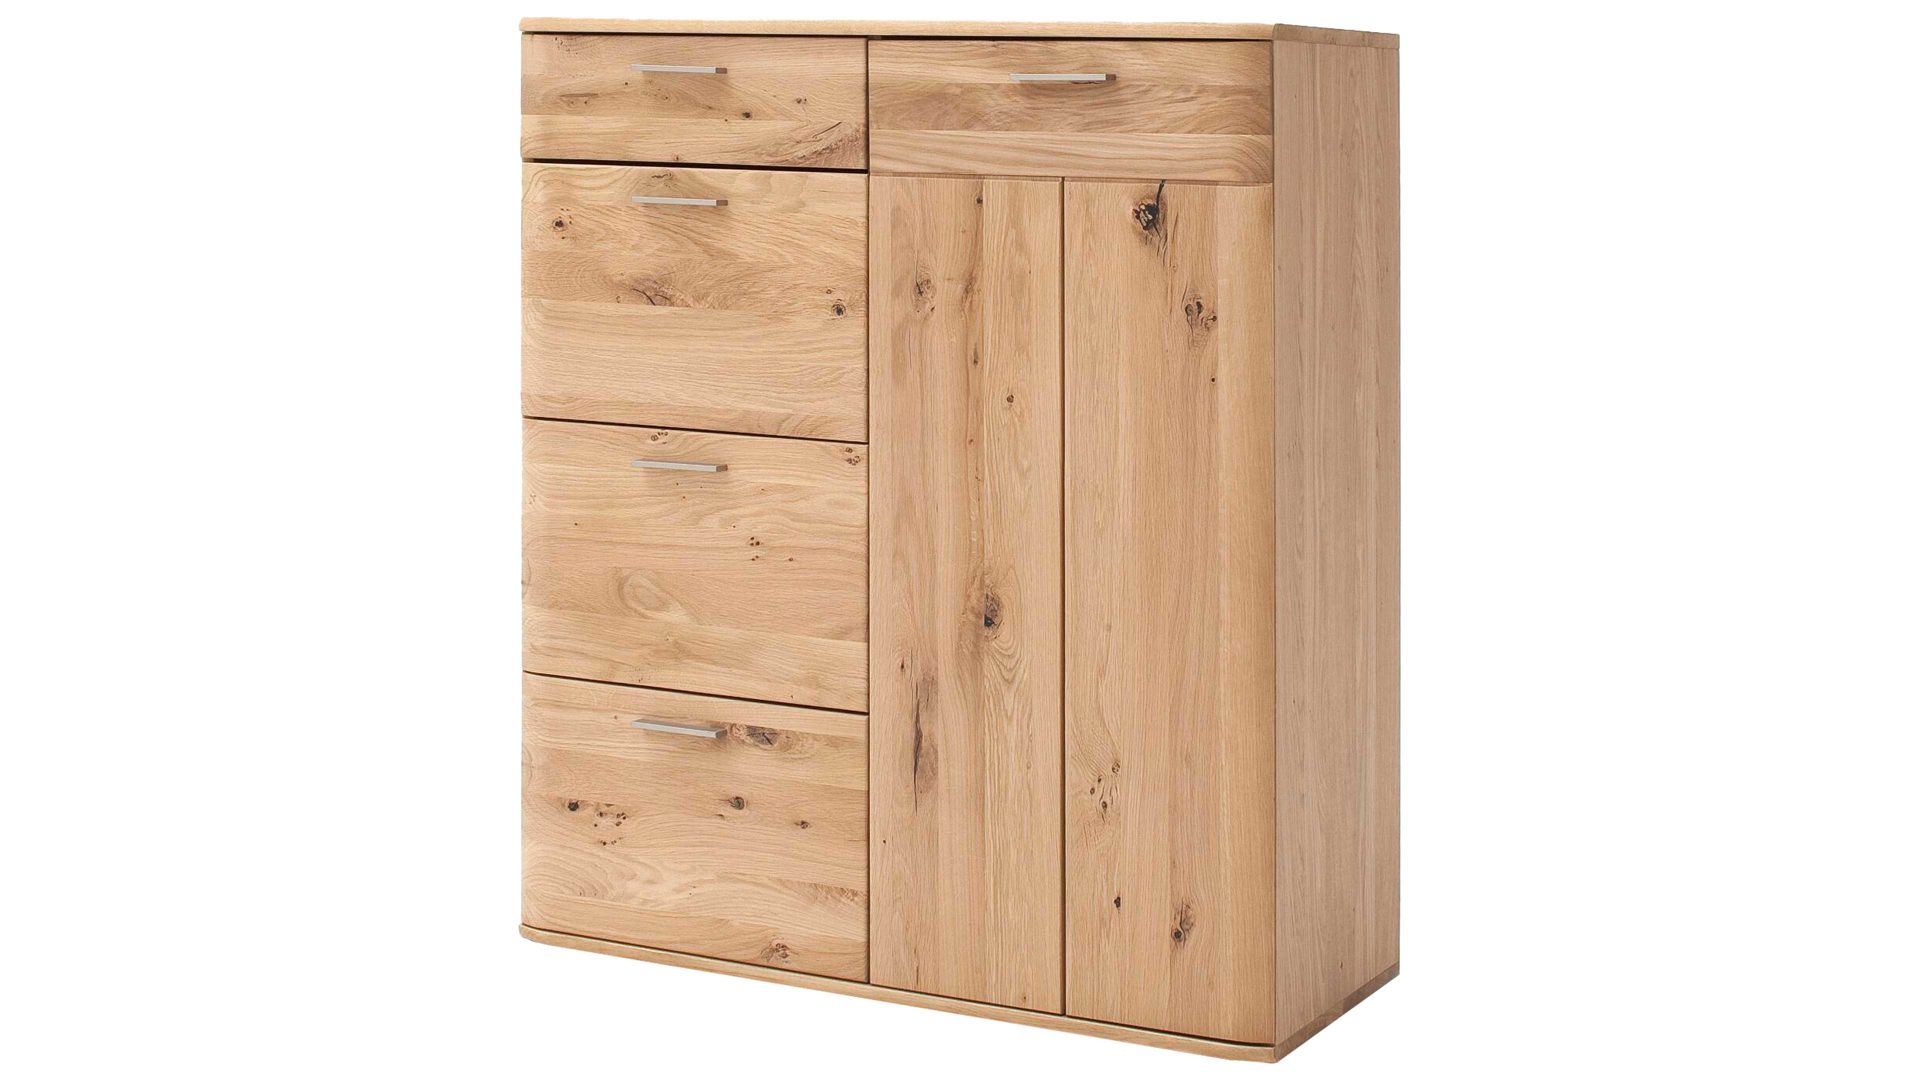 Kombikommode Mca furniture aus Holz in Holzfarben Kombikommode Nilo biancofarbene Balkeneiche – eine Tür, vier Schubladen